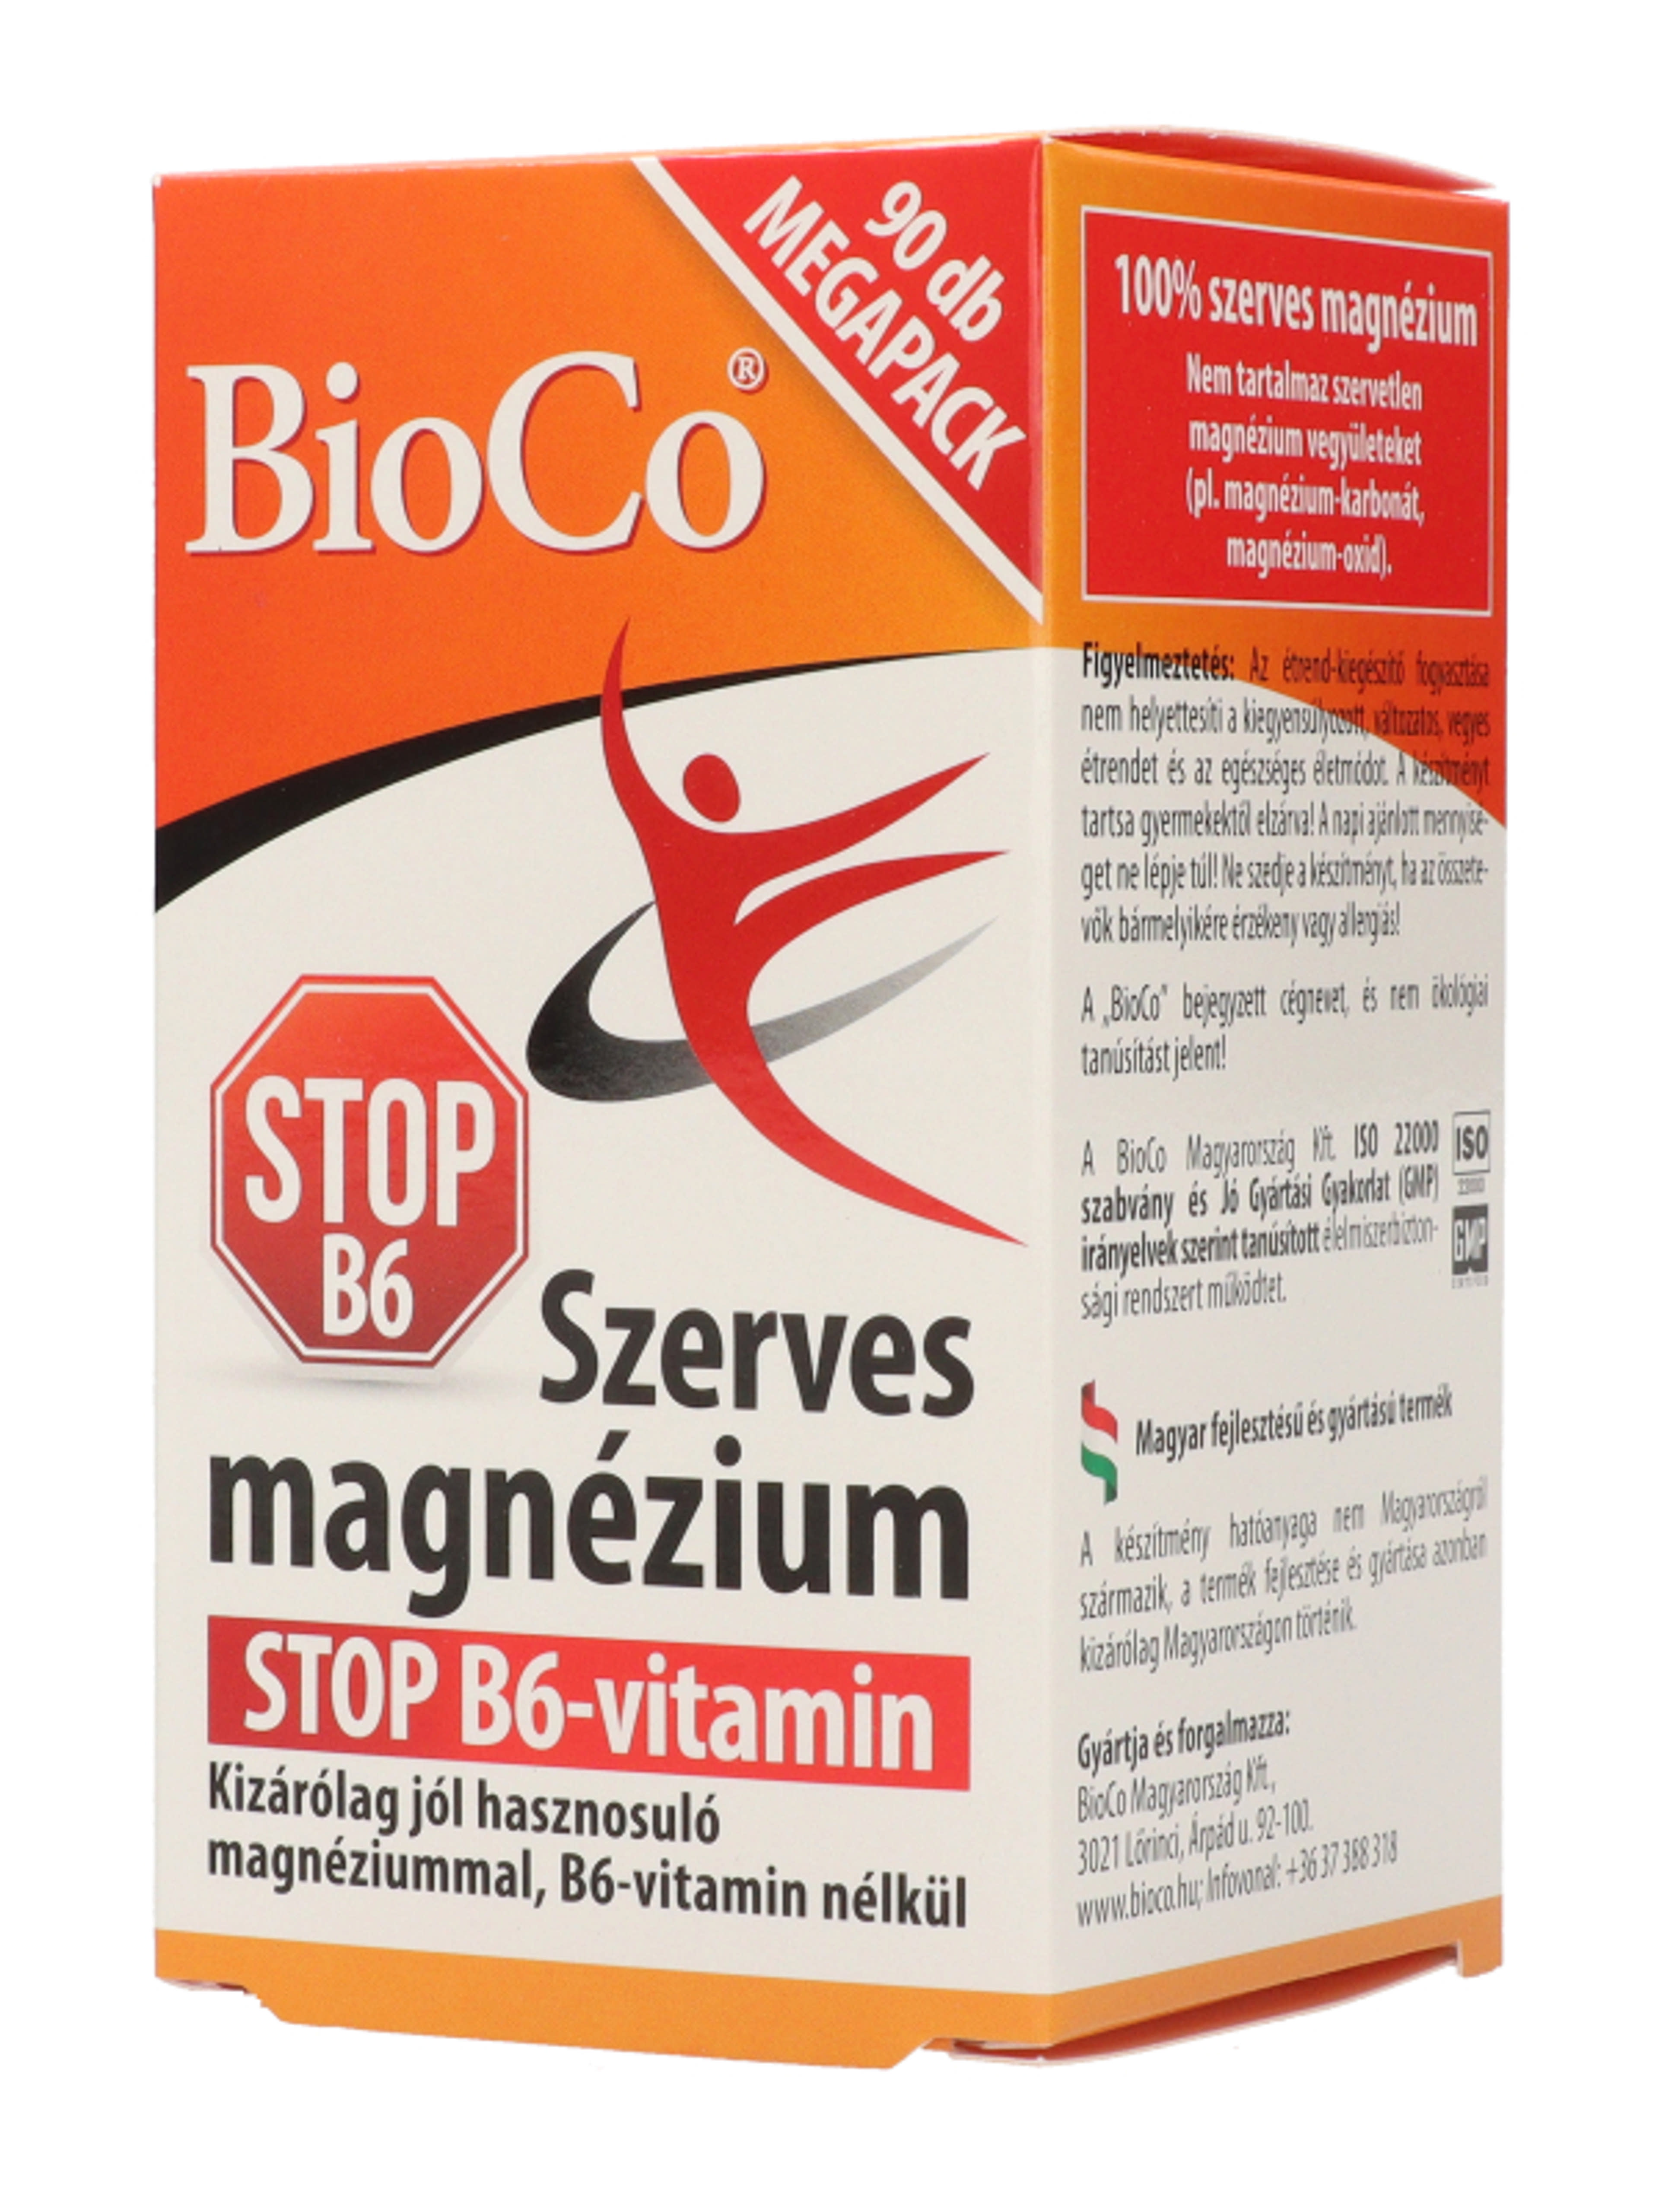 Bioco szerves magnézium stop B6 vitamin tabletta - 90 db-5